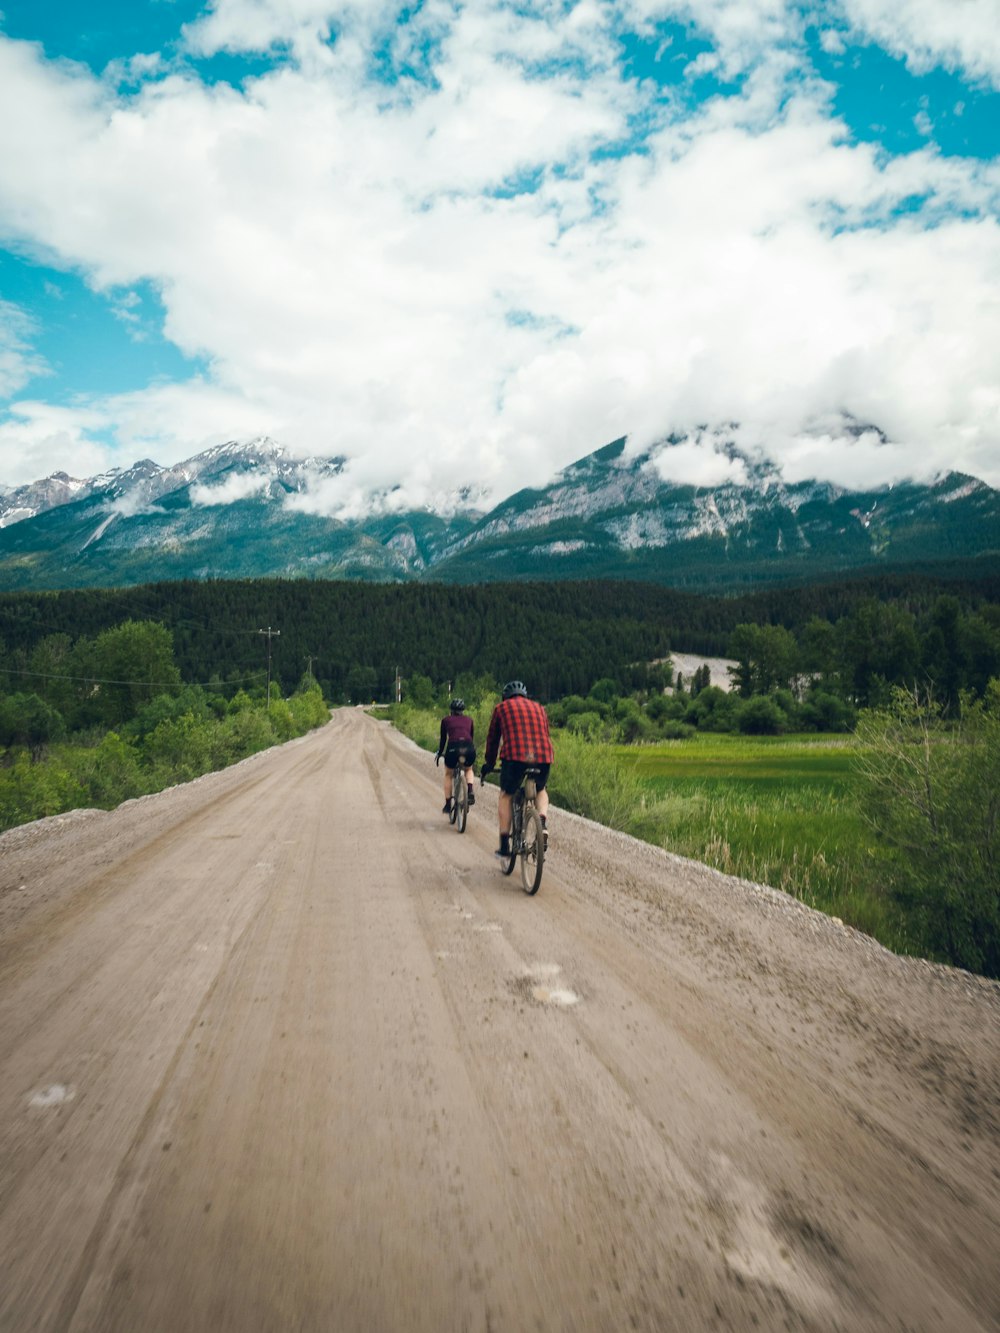 Un paio di persone in bicicletta su una strada sterrata con le montagne sullo sfondo